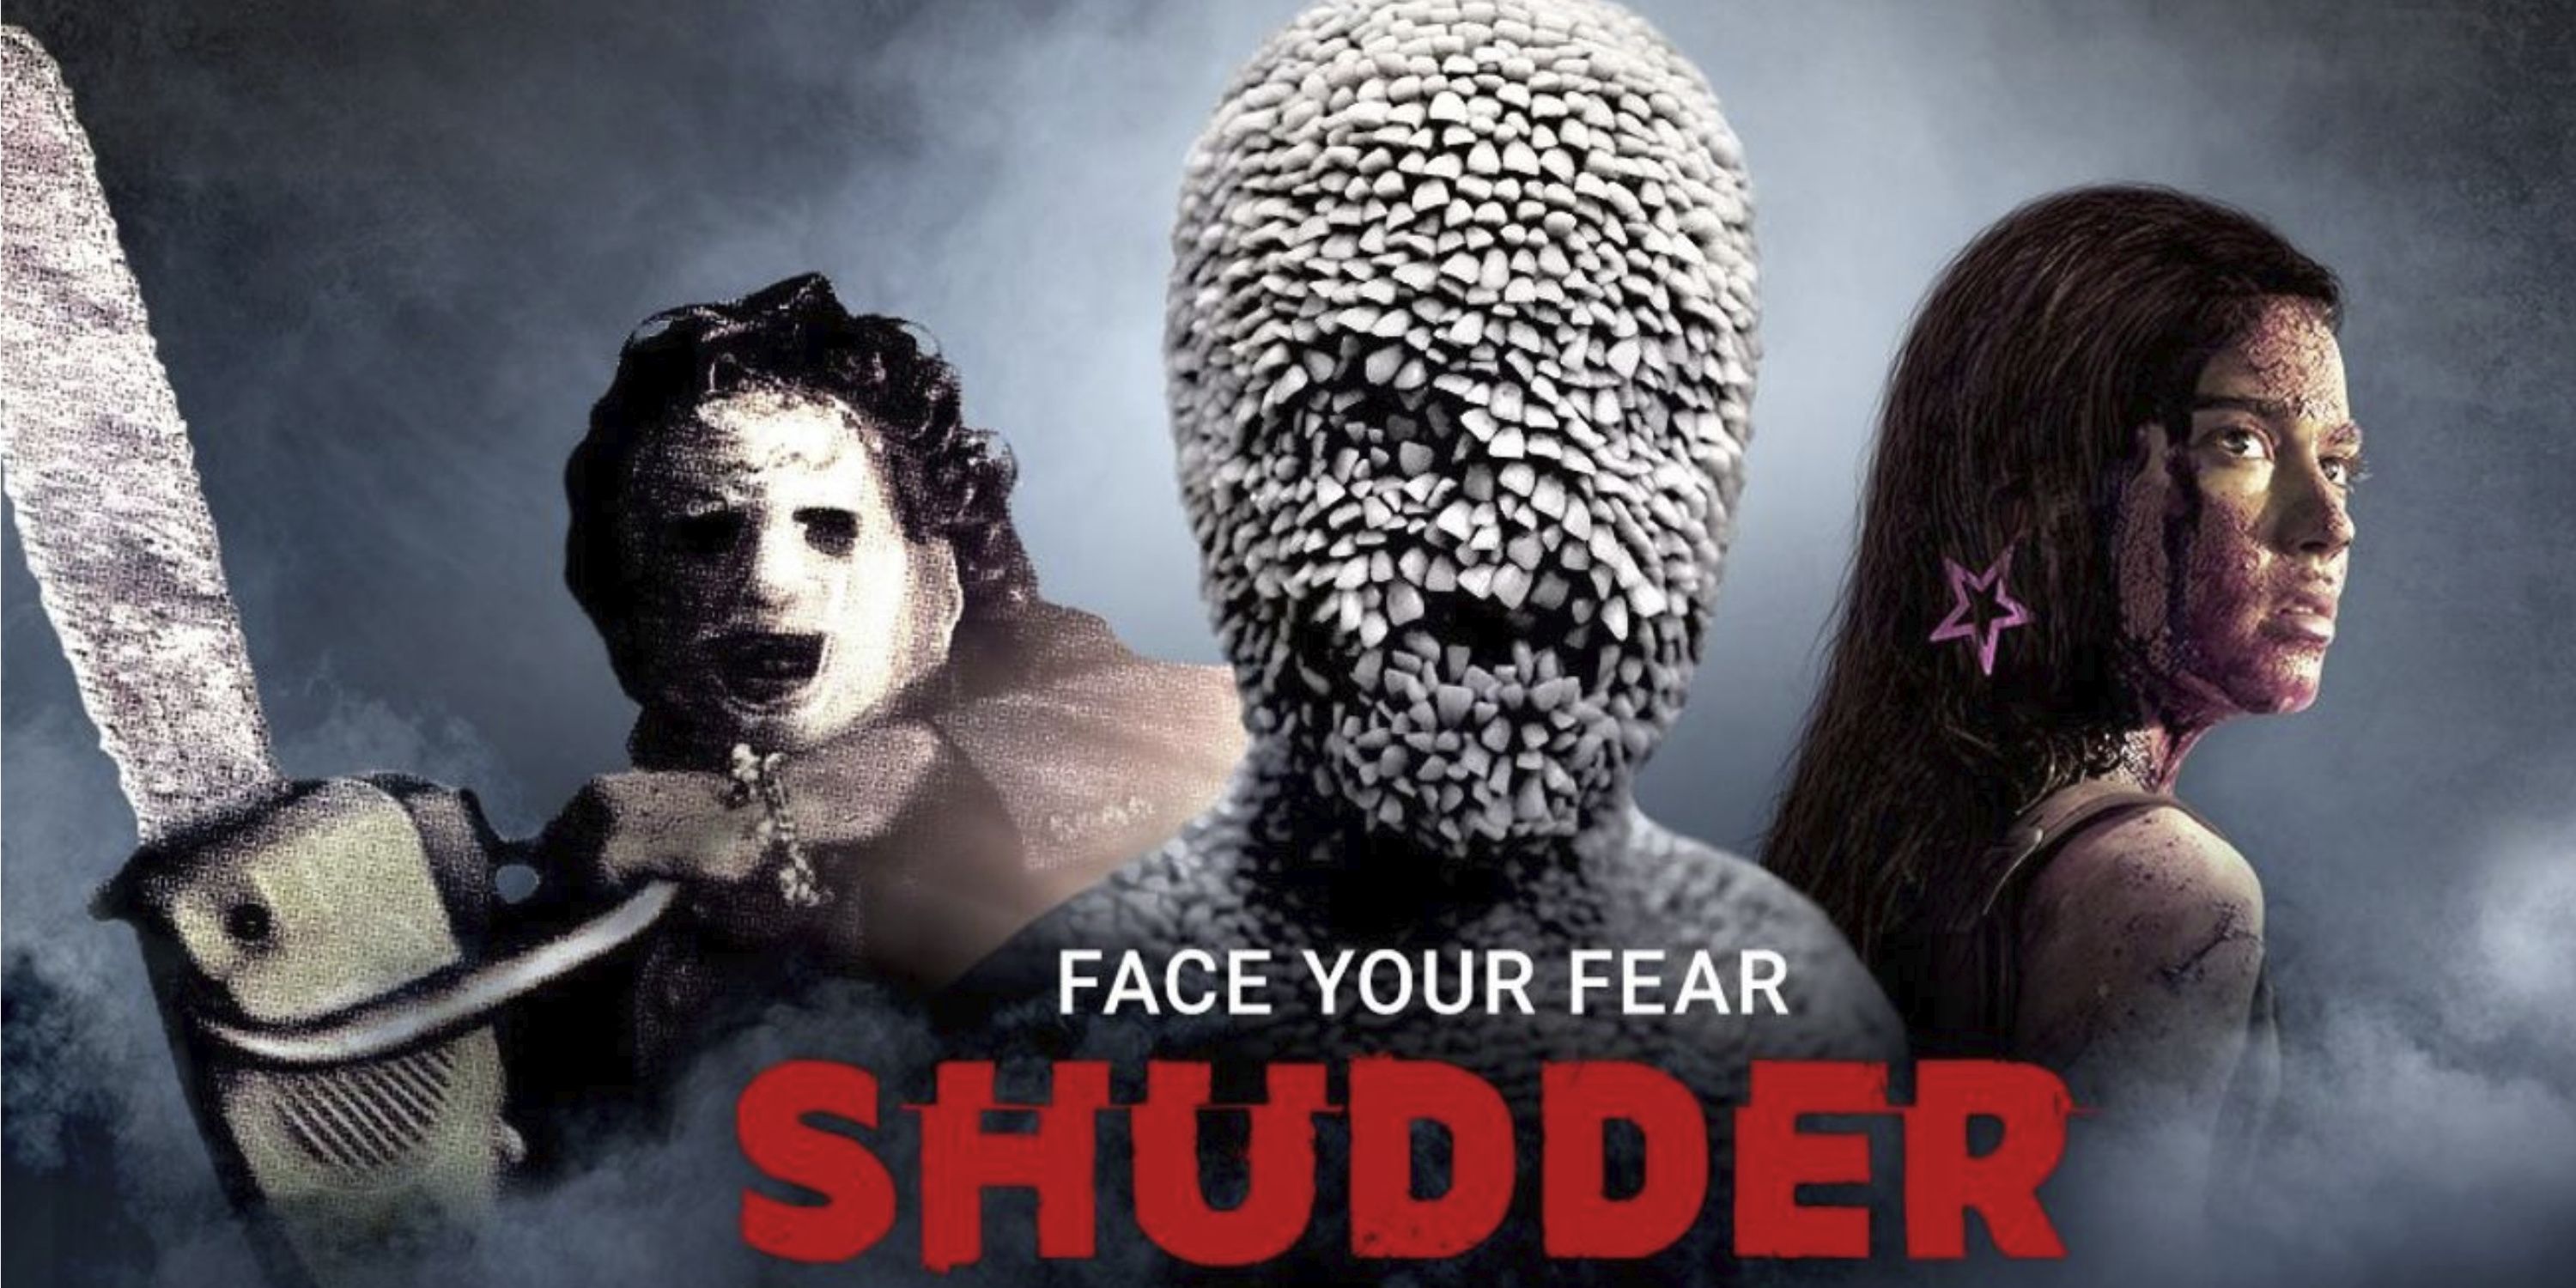 Shudder - Certified fresh! Rotten Tomatoes agrees that Shudder's